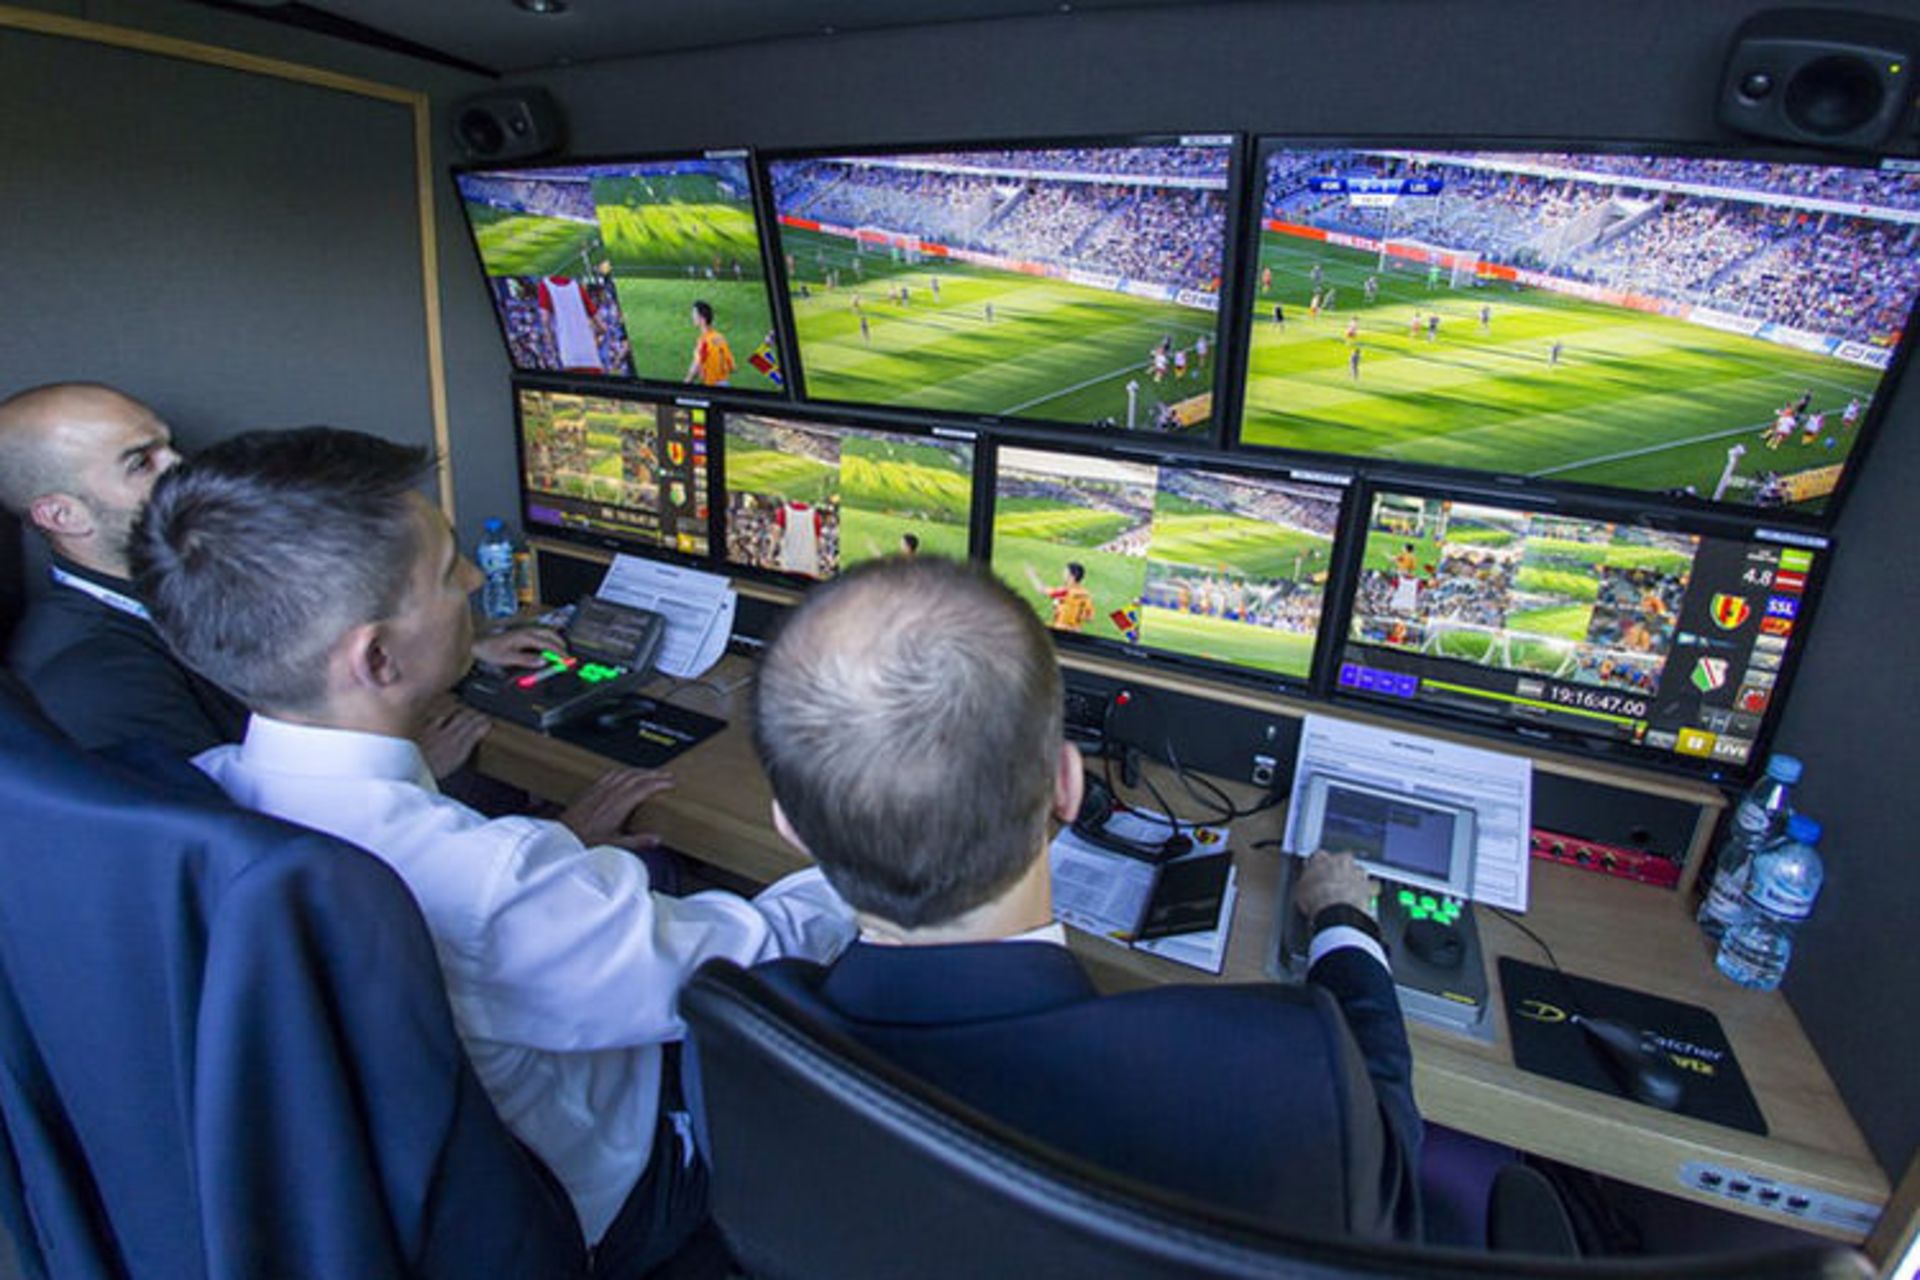 فوتبال و فناوری